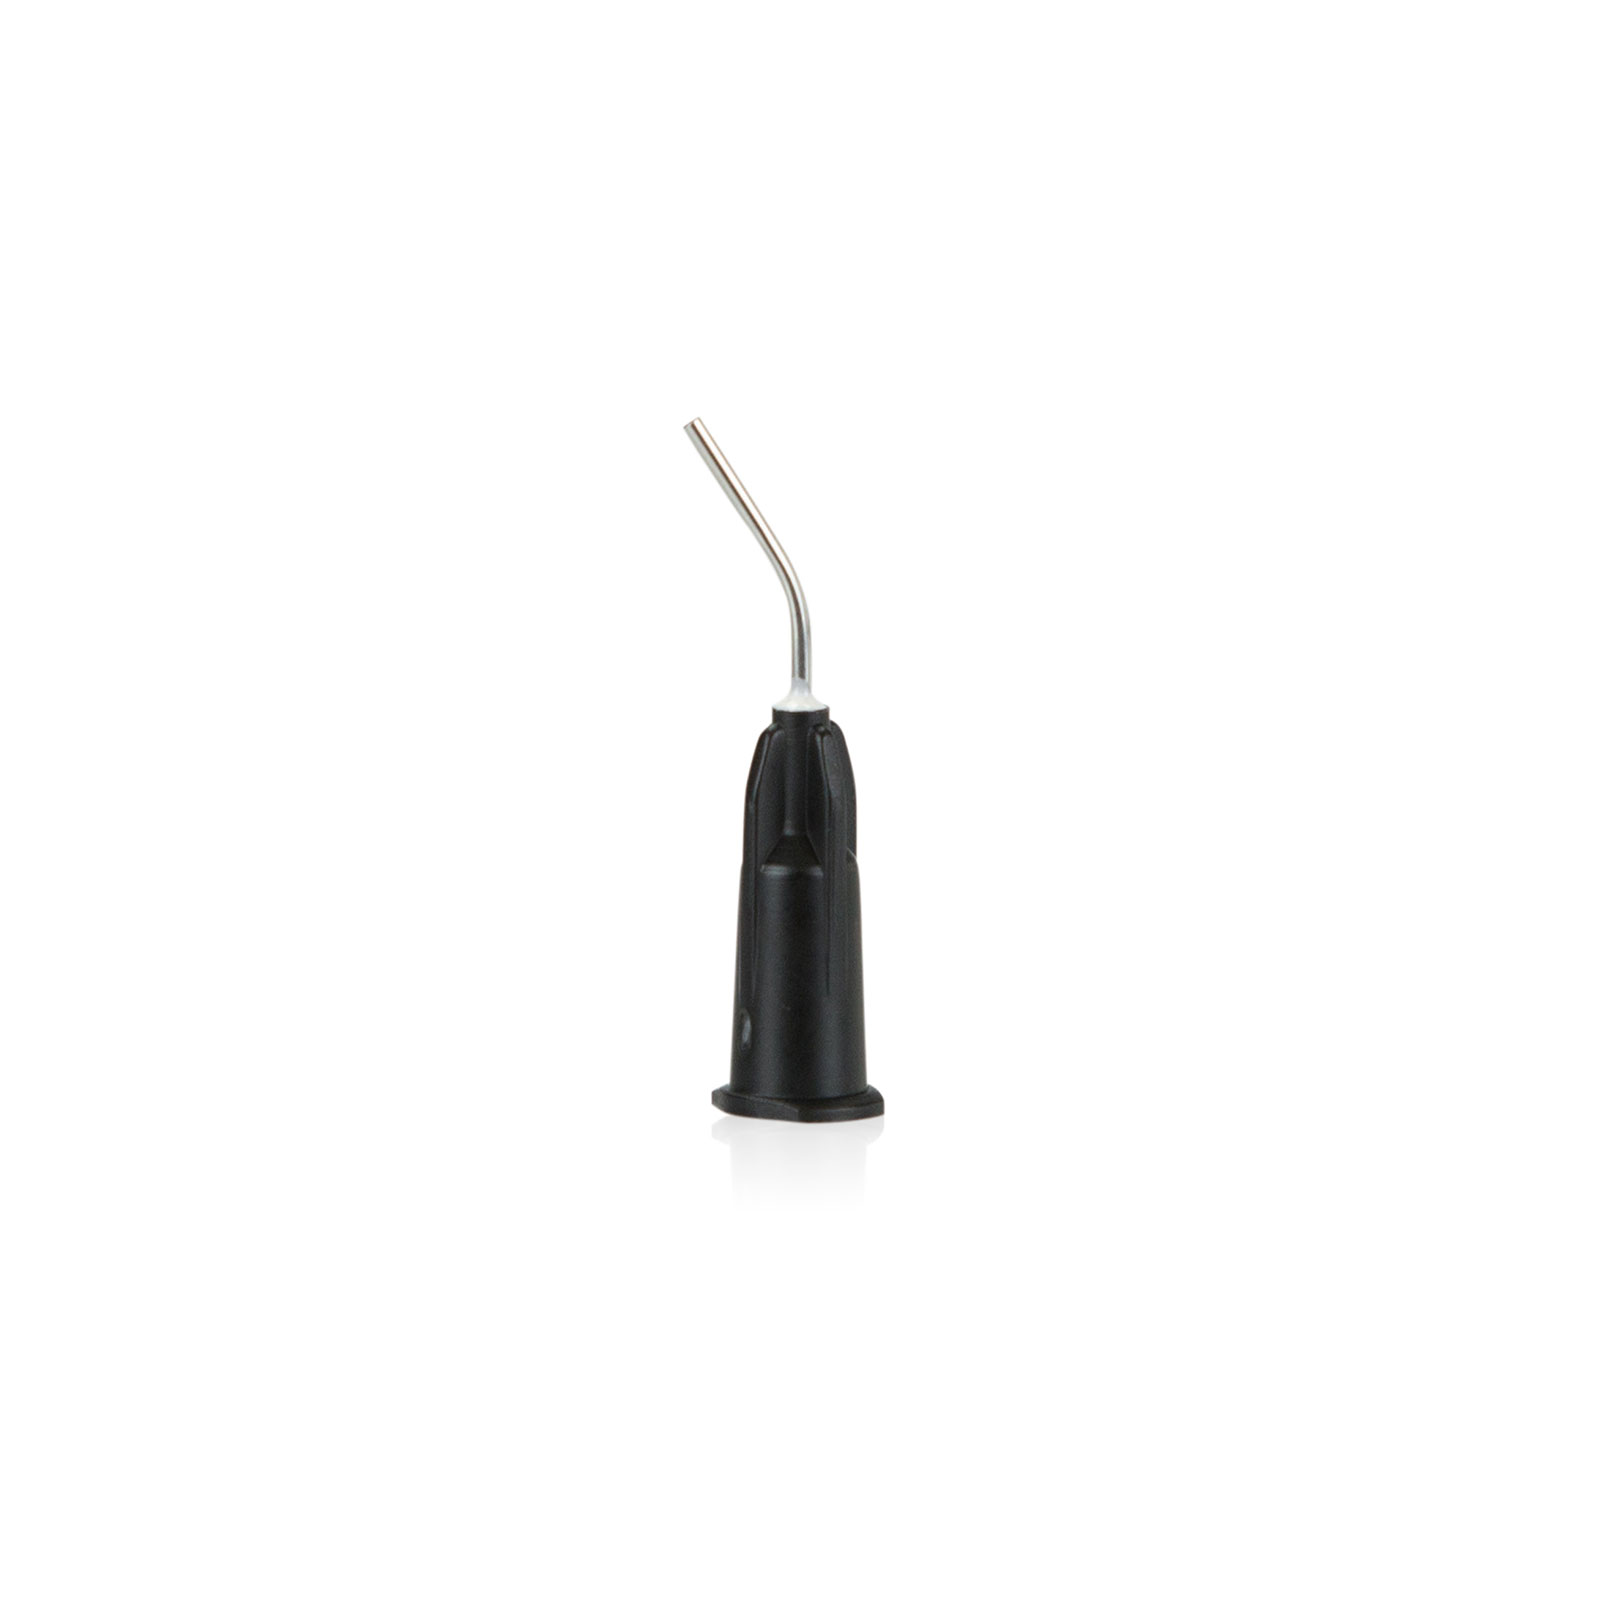 Cannula Luerlock 1.1mm black/20 | Filling Materials | Ivoclar US